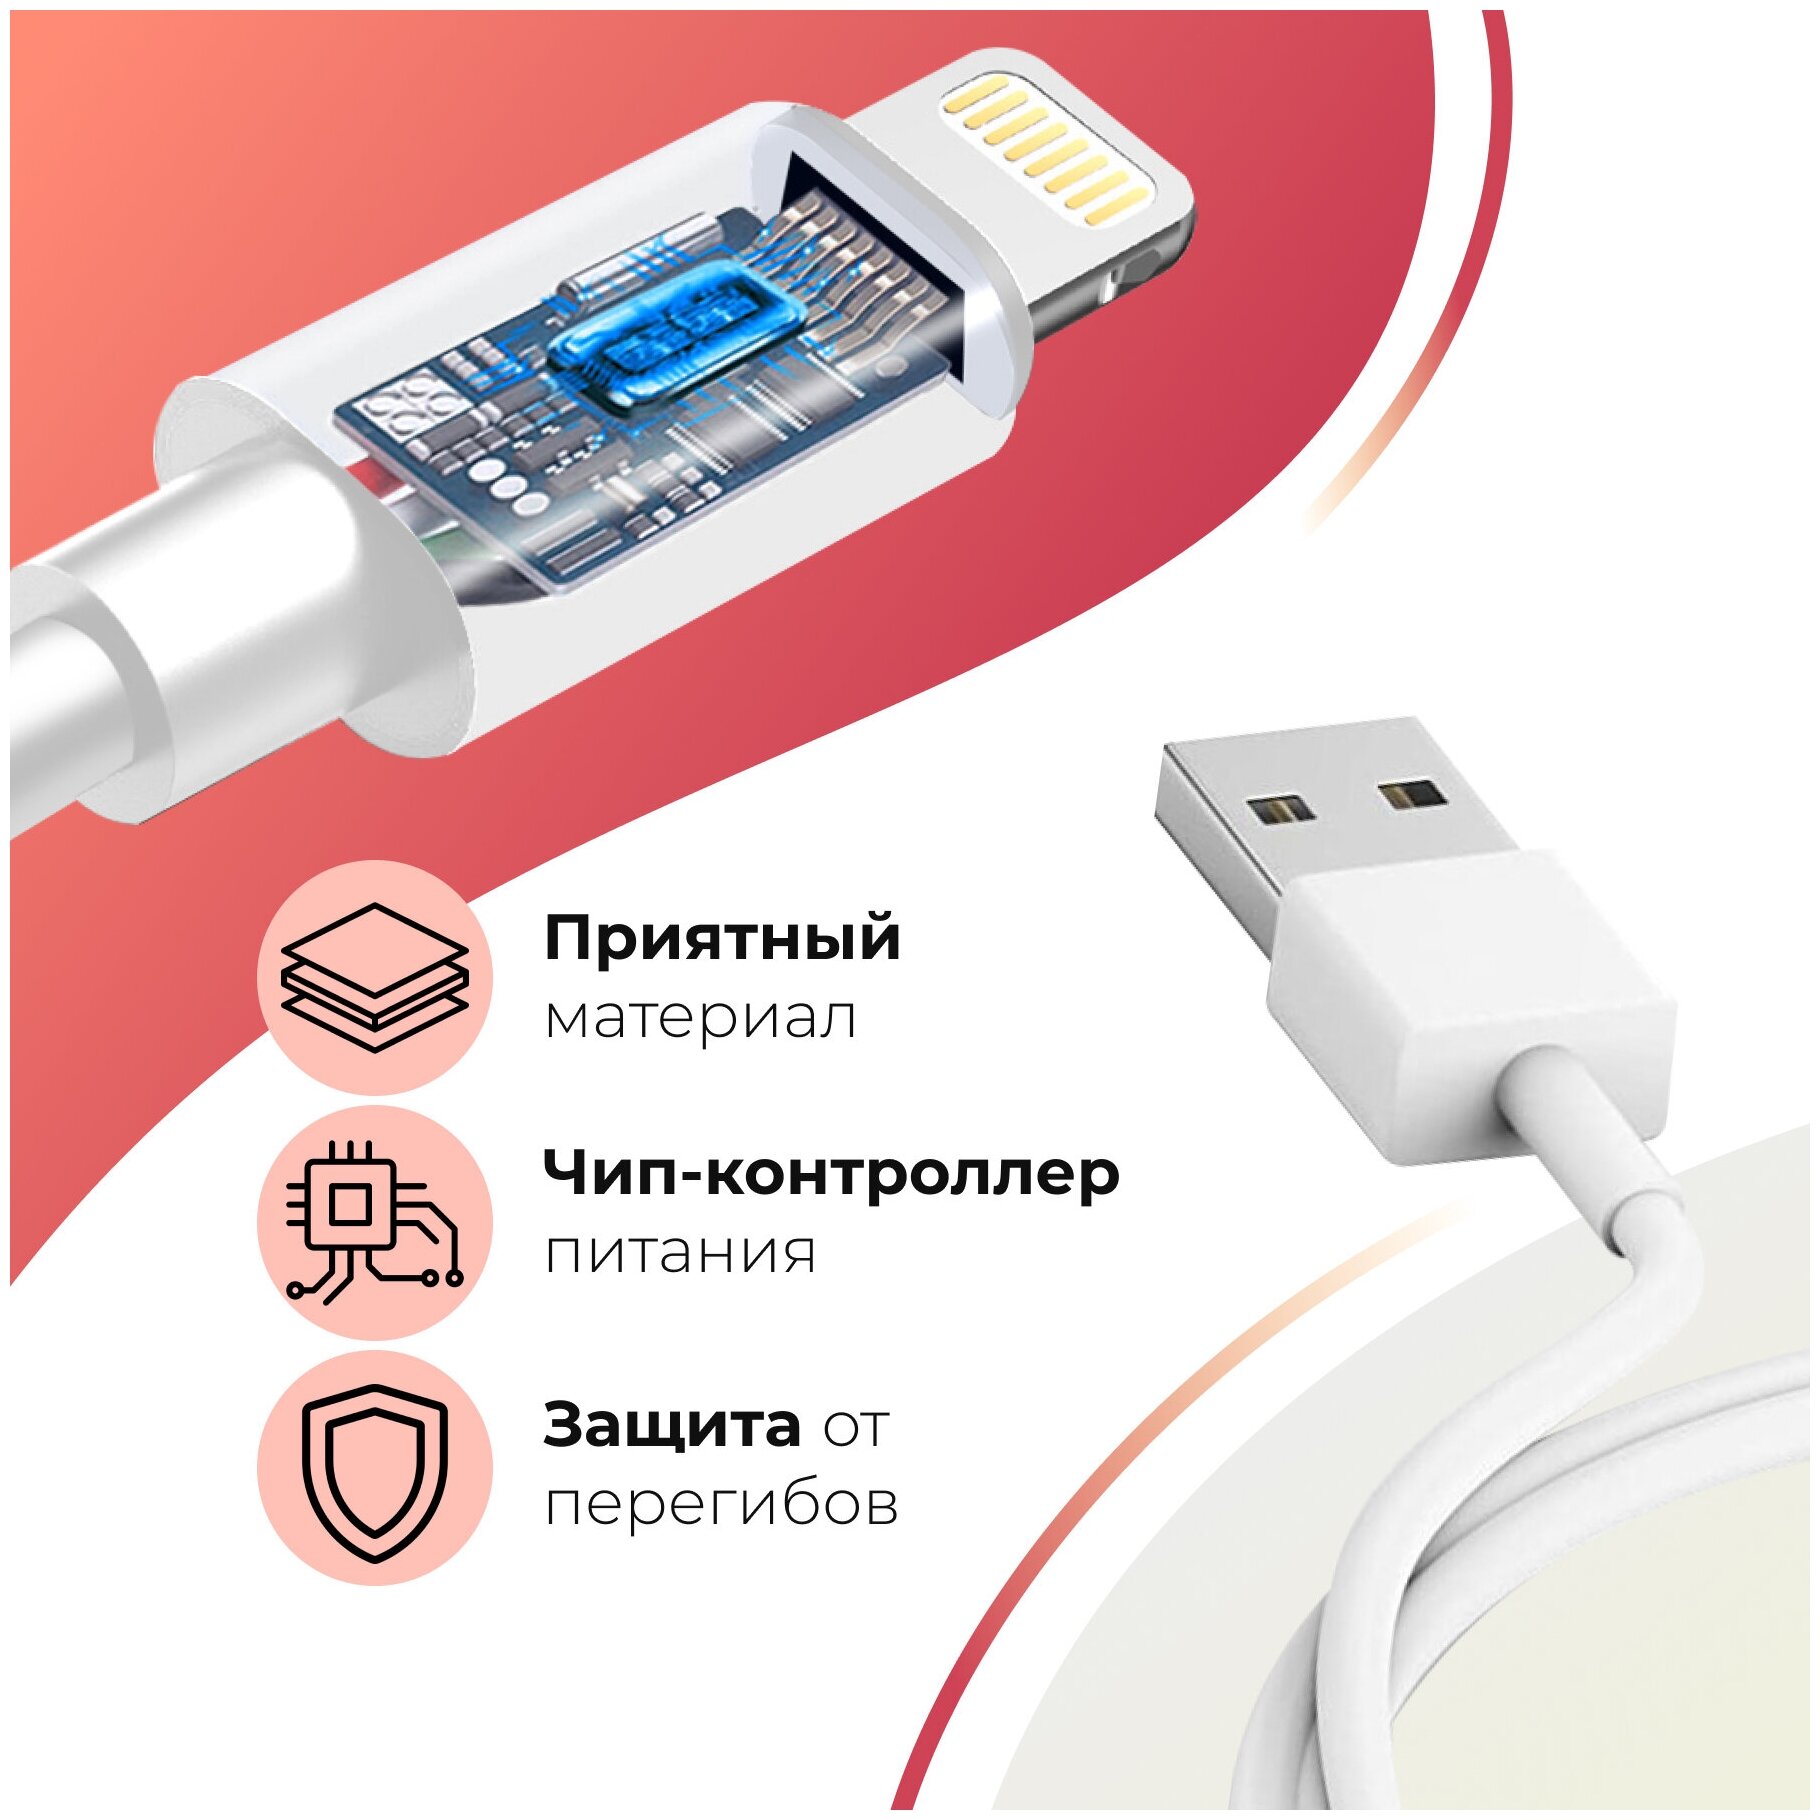 Зарядный кабель для Apple iPhone и AirPods / Lightning - USB 1Ампер/ Для Эпл Айфон и Эирподс Лайтинг / Simple Cable 1 м (Белый)